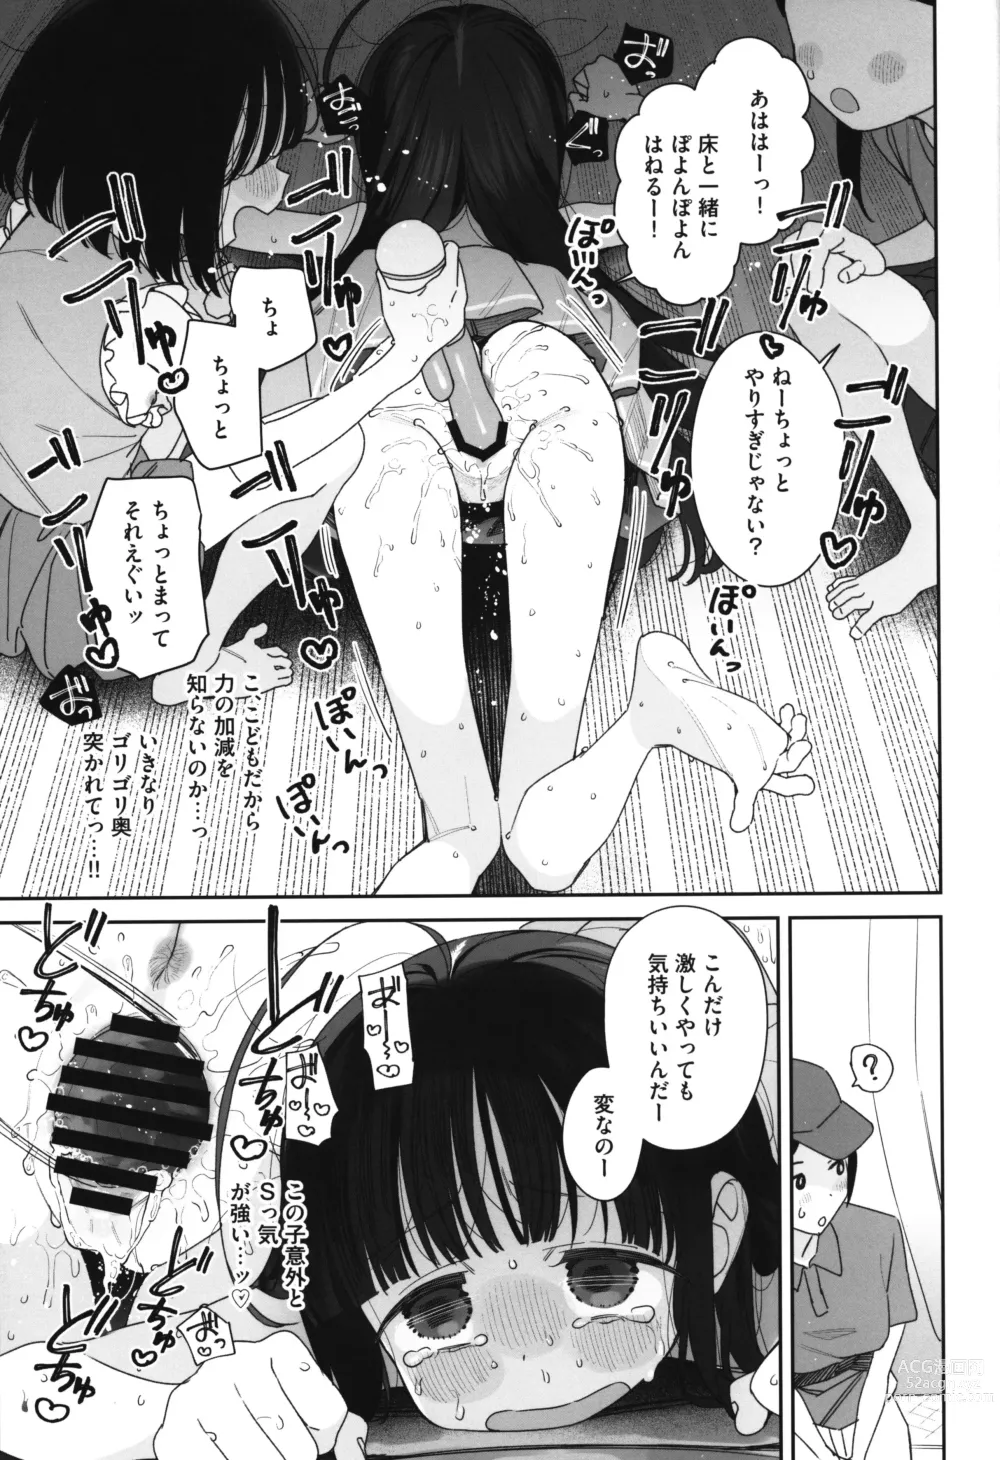 Page 14 of doujinshi TS Loli Oji-san no Bouken Kanwa -Fuwafuwa Dome Hen- - The Adventures of TS Lori guy.